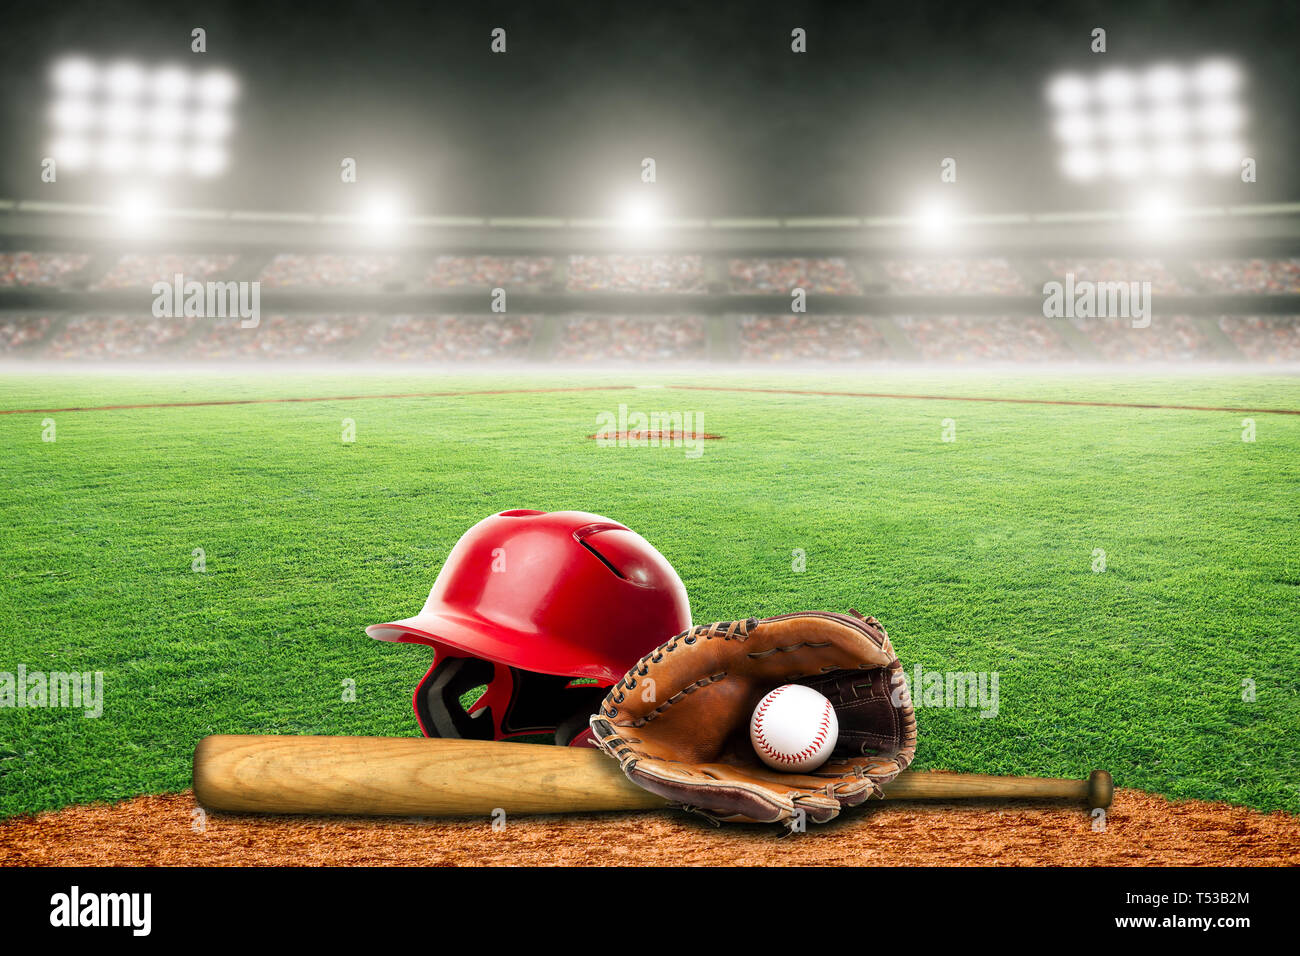  Bates - Béisbol: Deportes y aire libre